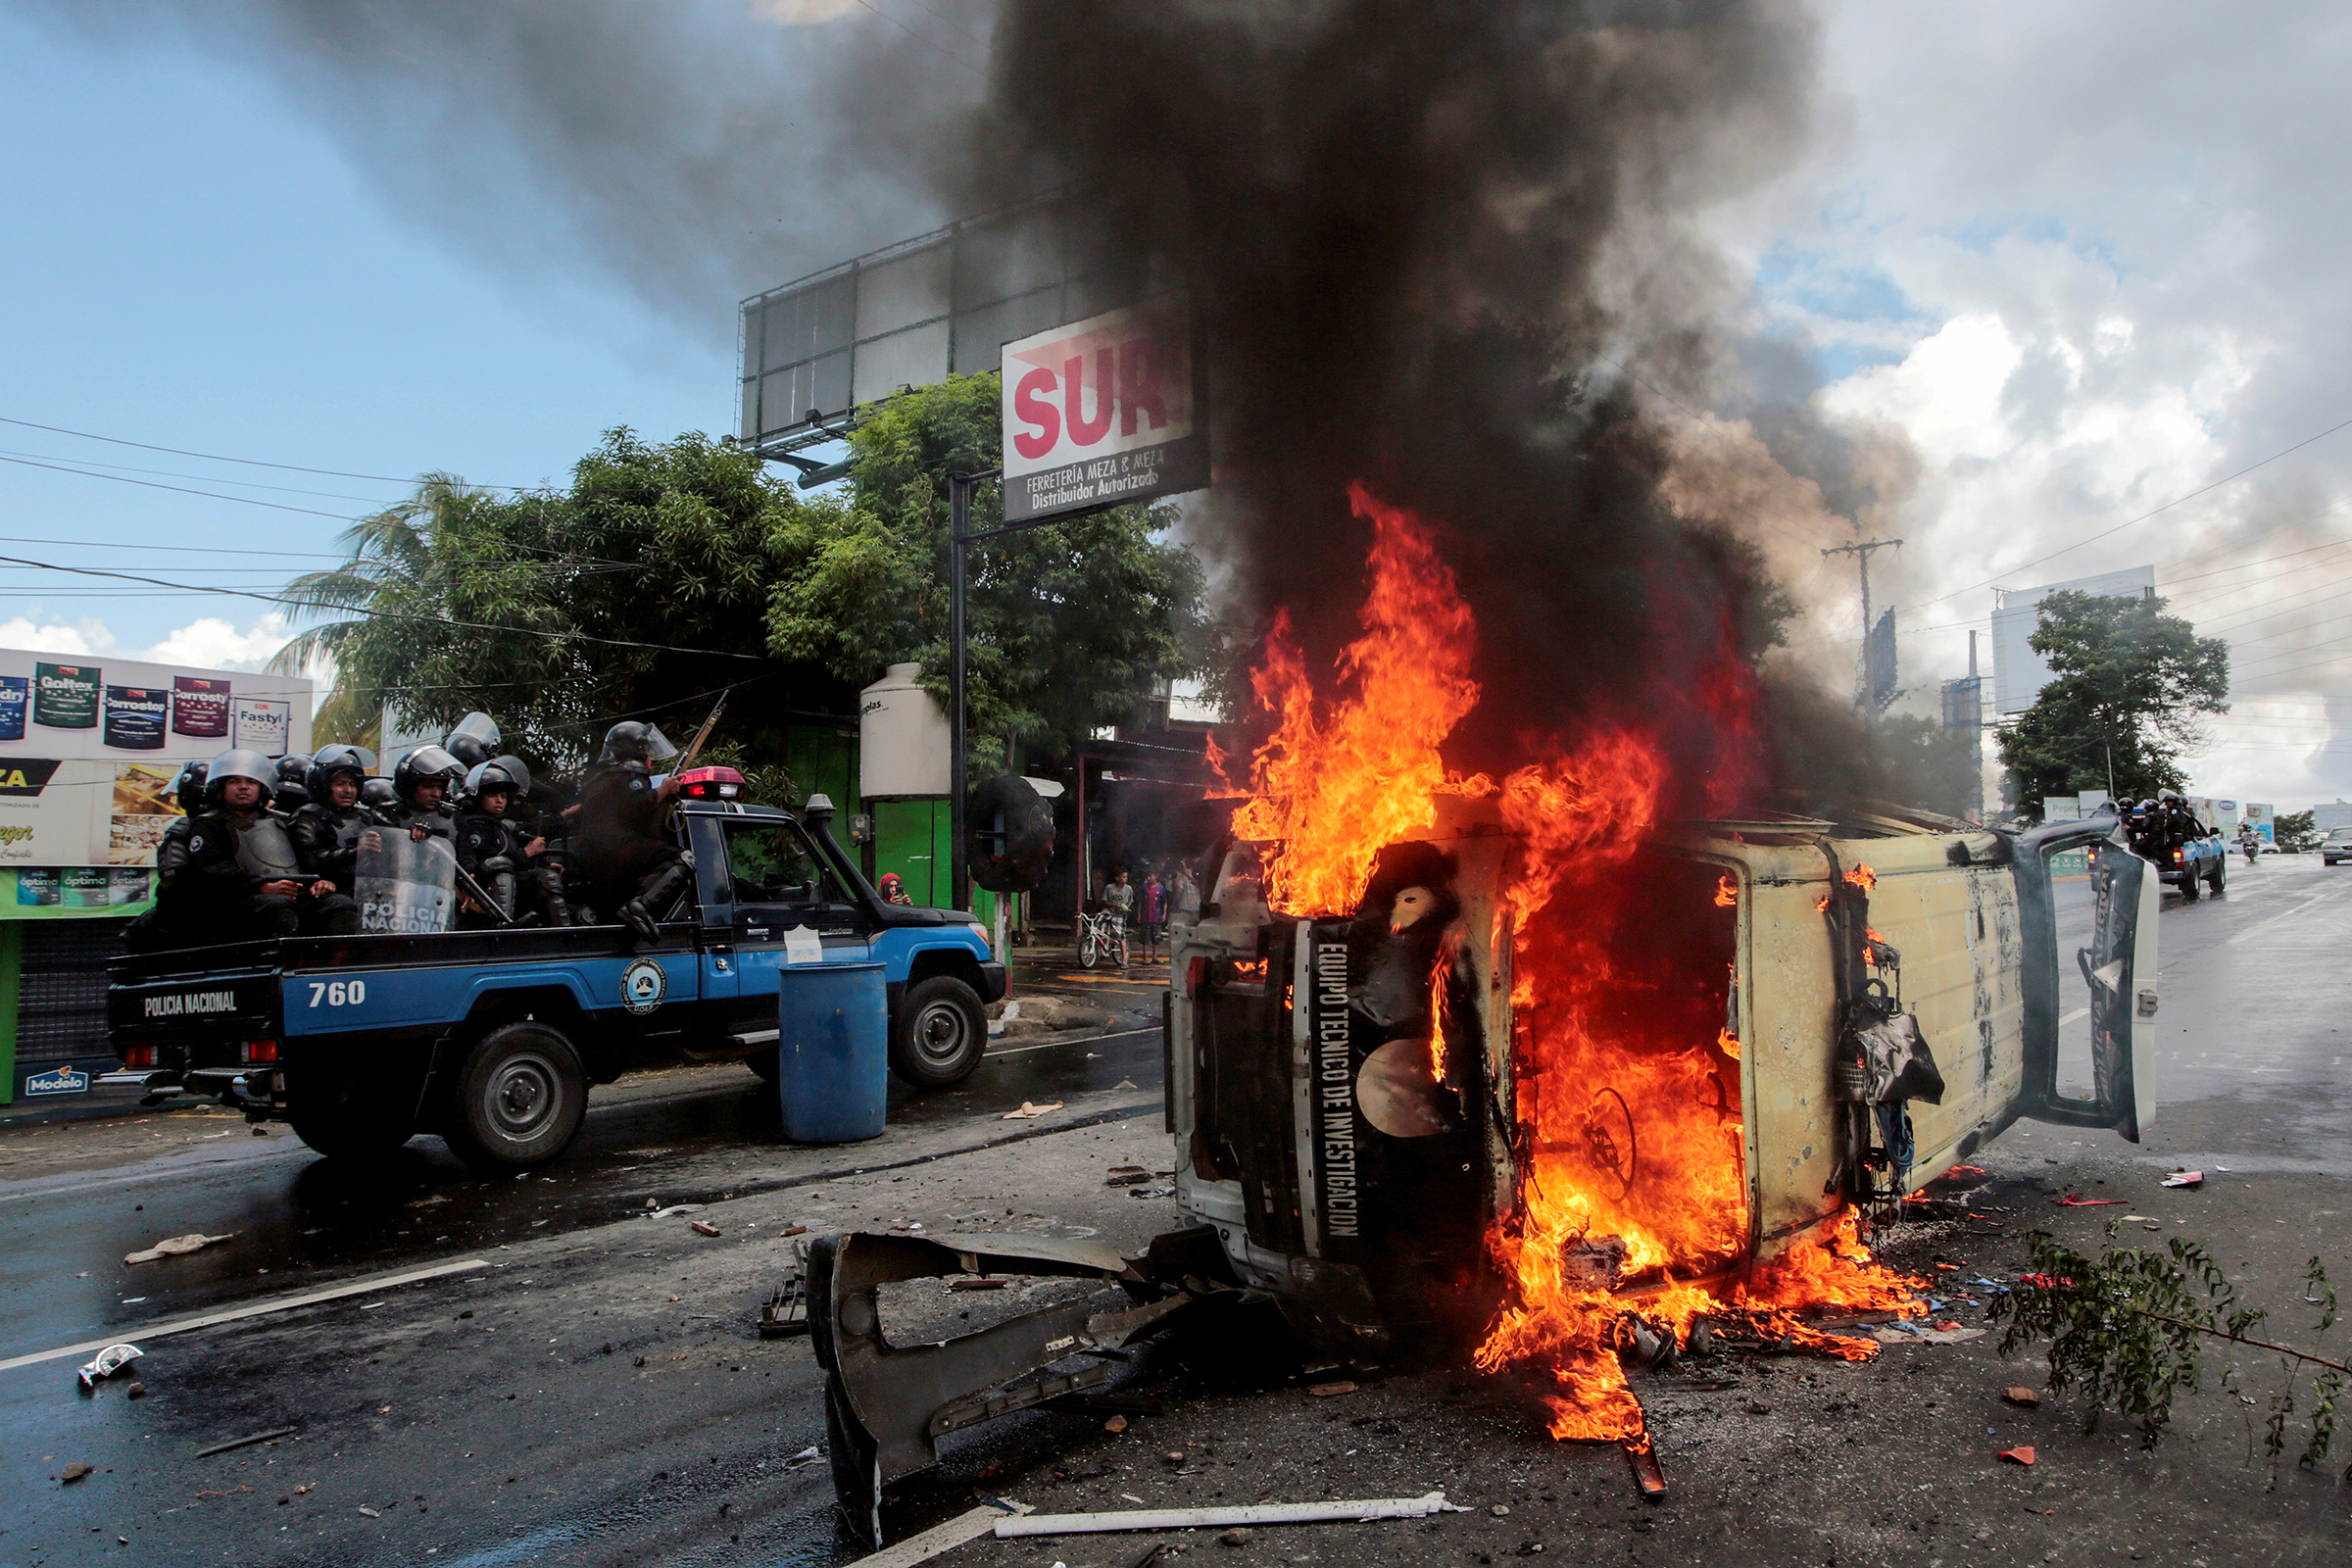 <p>В апреле 2018 года в нескольких городах Никарагуа начались митинги и акции против реформы социального обеспечения, предполагавшей увеличение налогов и урезание льгот. Демонстрации&nbsp;быстро переросли в беспорядки, за первые пять дней в них погибли около 30 человек. Когда президент Даниэль&nbsp;Ортега объявил об отмене реформы, протестующие <a href="https://www.laprensa.com.ni/2018/04/23/politica/2408526-en-vivo-sexto-dia-de-protestas-en-nicaragua">стали требовать</a> прекратить&nbsp;насилие&nbsp;в стране, освободить&nbsp;студентов, задержанных полицией, и прекратить&nbsp;цензуру&nbsp;на телевидении. Протесты продолжались до осени, в них <a href="https://ria.ru/world/20180802/1525847816.html">погибли</a> 317 человек, арестованы более 250 человек</p>
